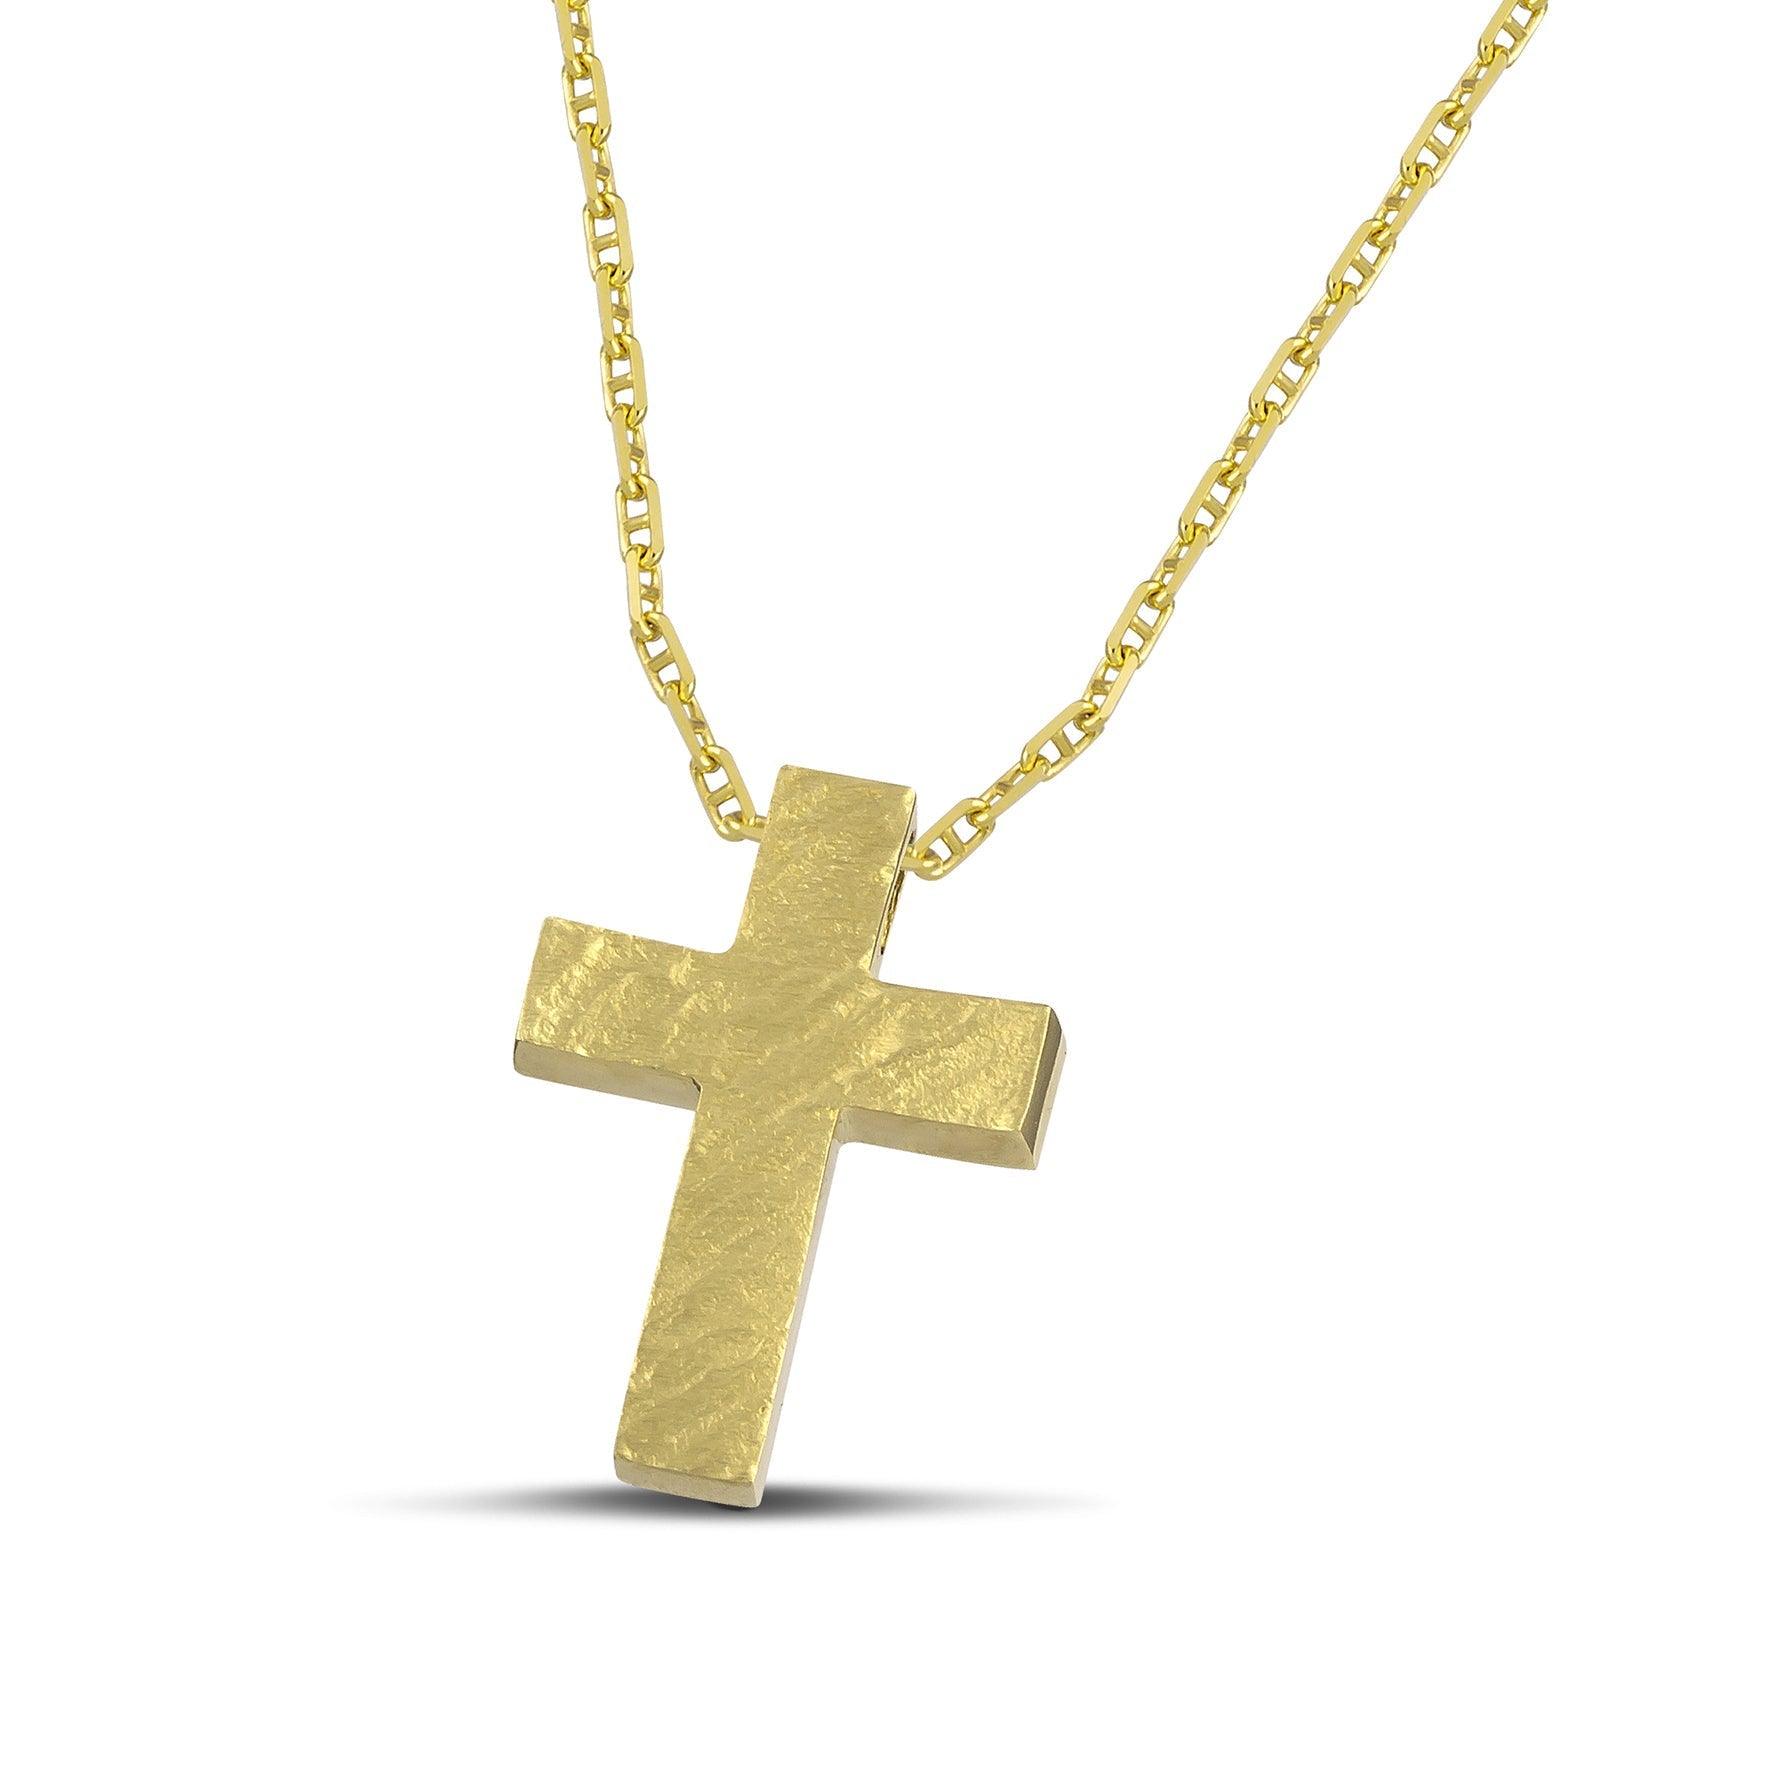 Ανδρικός σταυρός βάπτισης από χρυσό Κ14, ανάγλυφος, με «Θ» αλυσίδα.